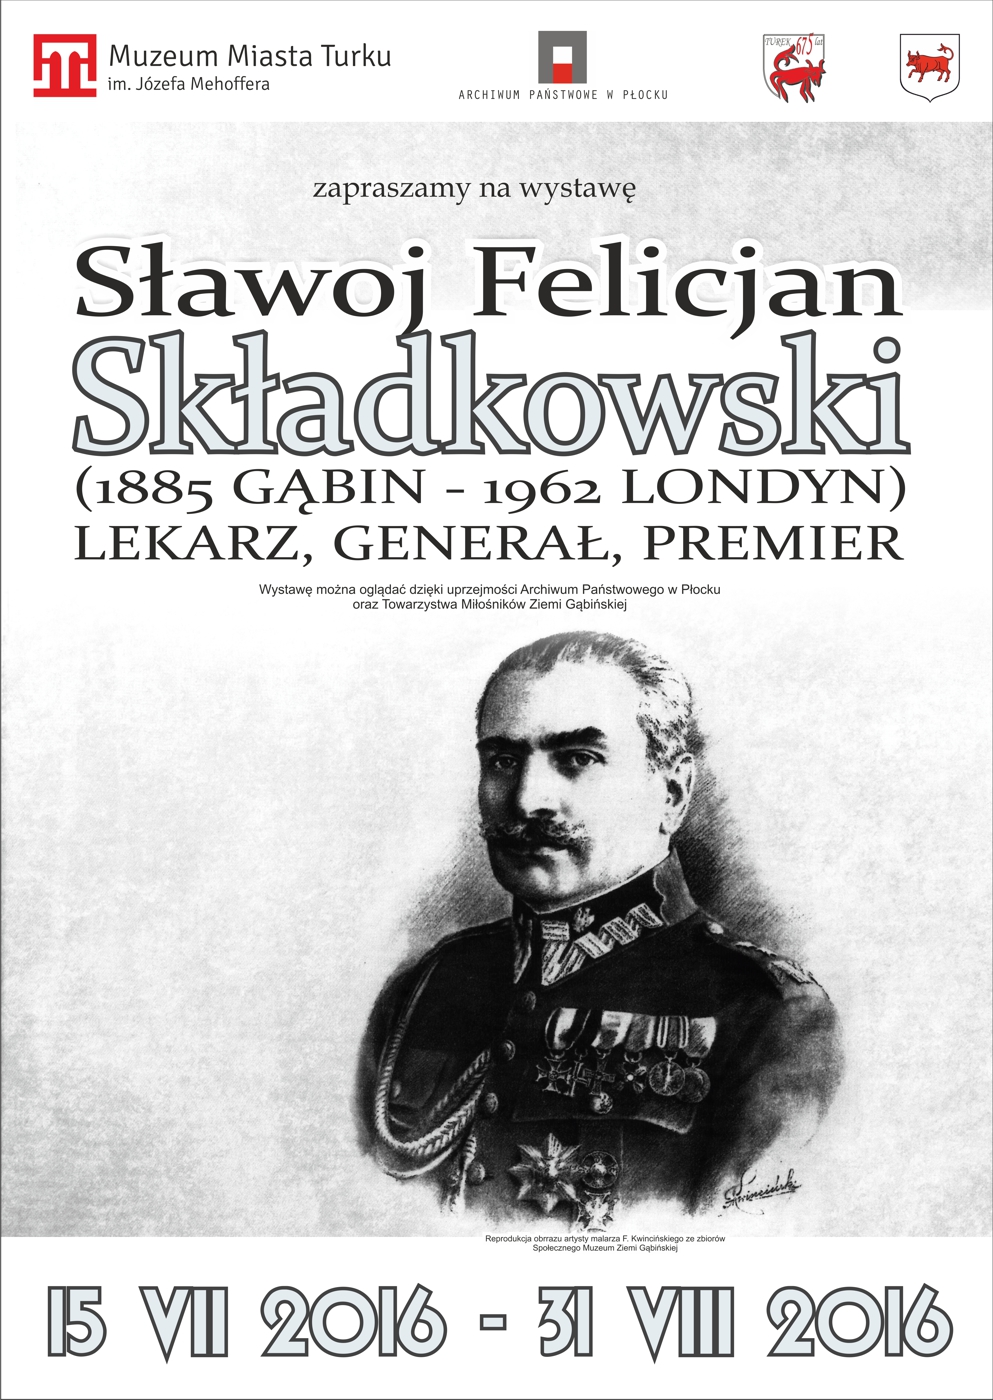 skladkowski1